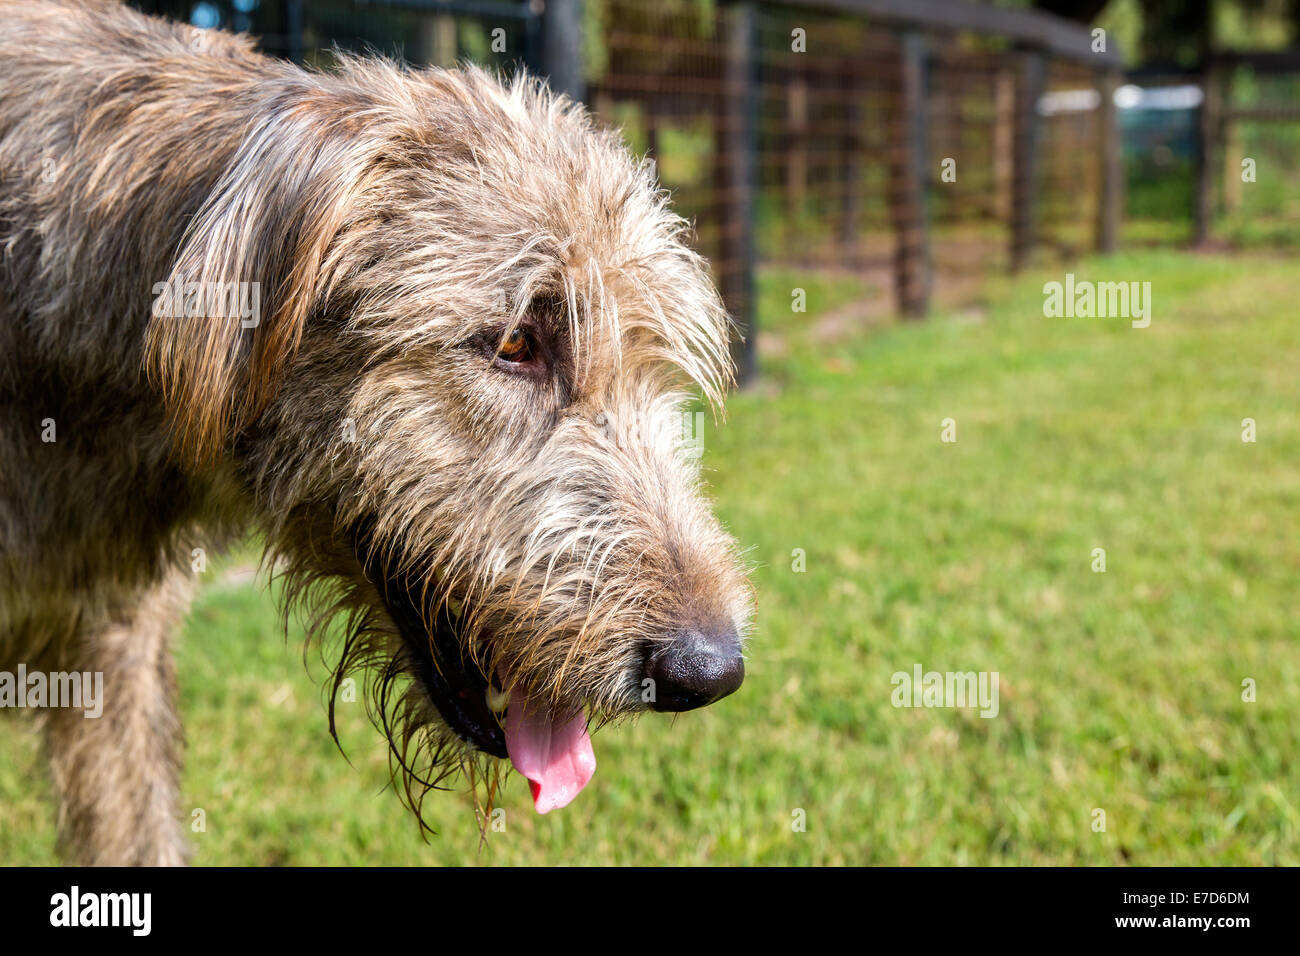 Grigio Irish Wolfhound ansimando esterno con shaggy i capelli e gli occhi marrone nel cortile recintato Foto Stock